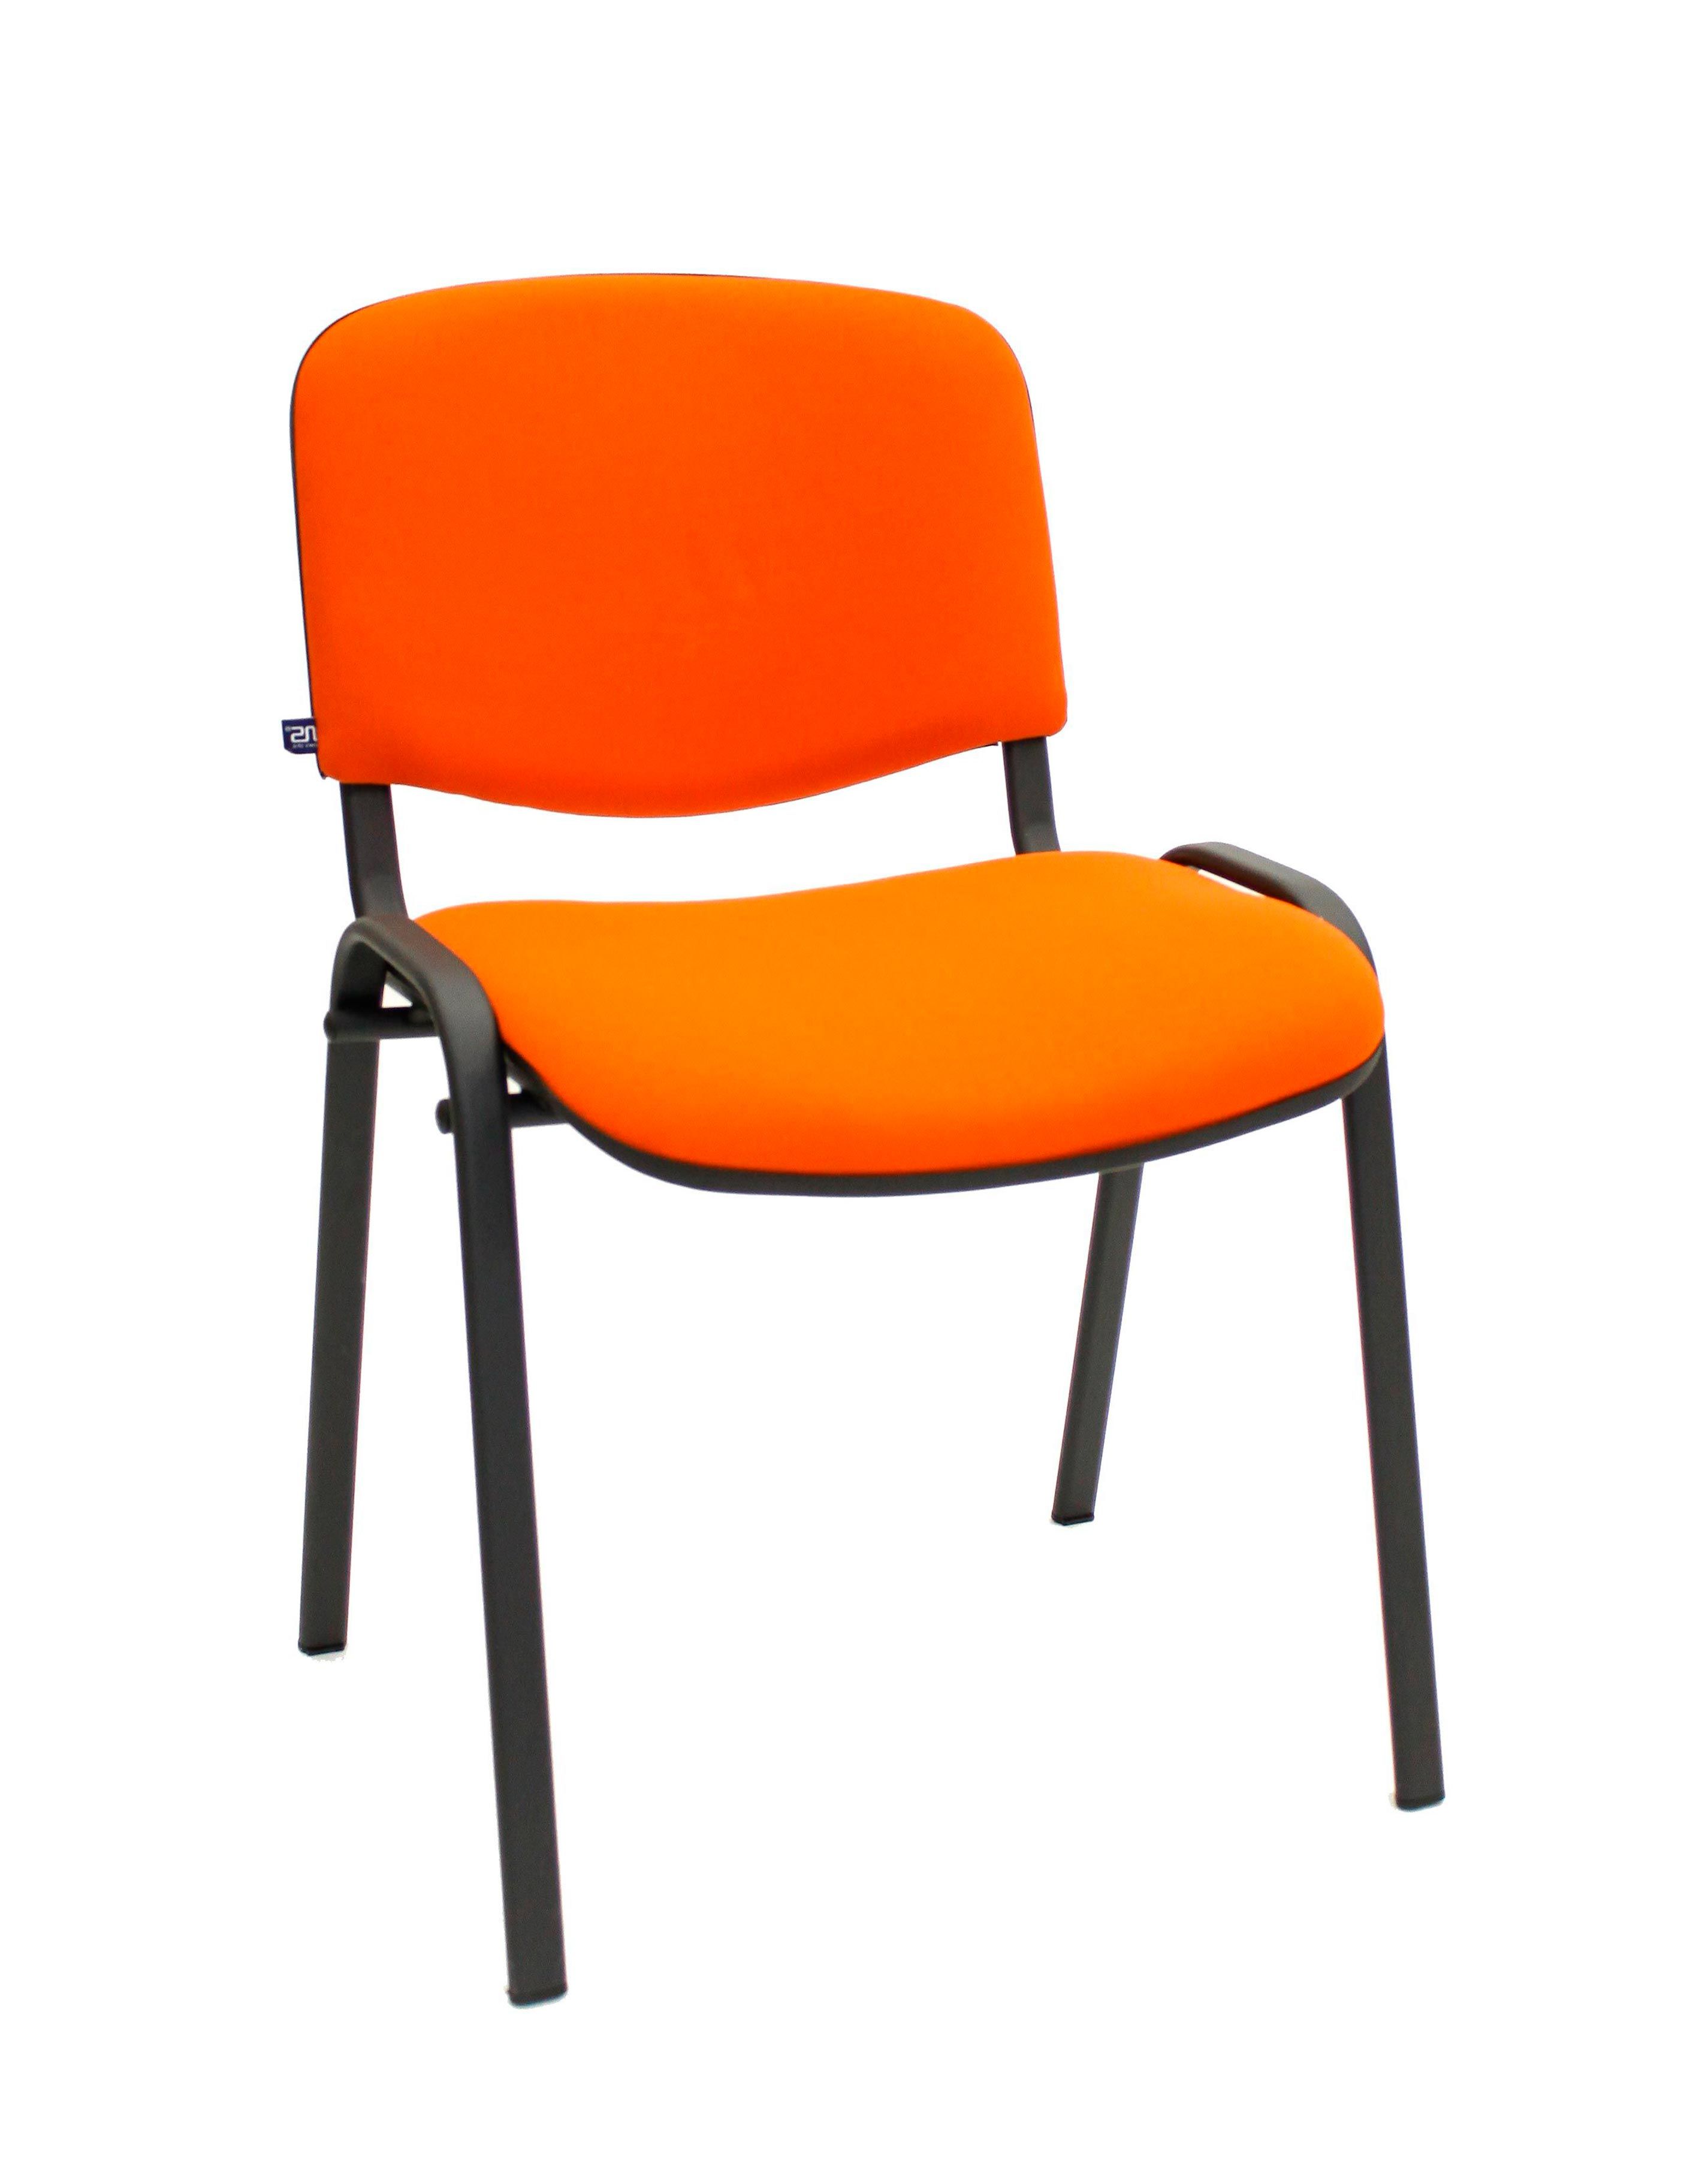 Стул посетителя nowy styl, изо Black. Стул ISO BL (PR) артикул 8#04145 Дефо. Nowy styl стулья оранжевый. Стул »изо Sigma».